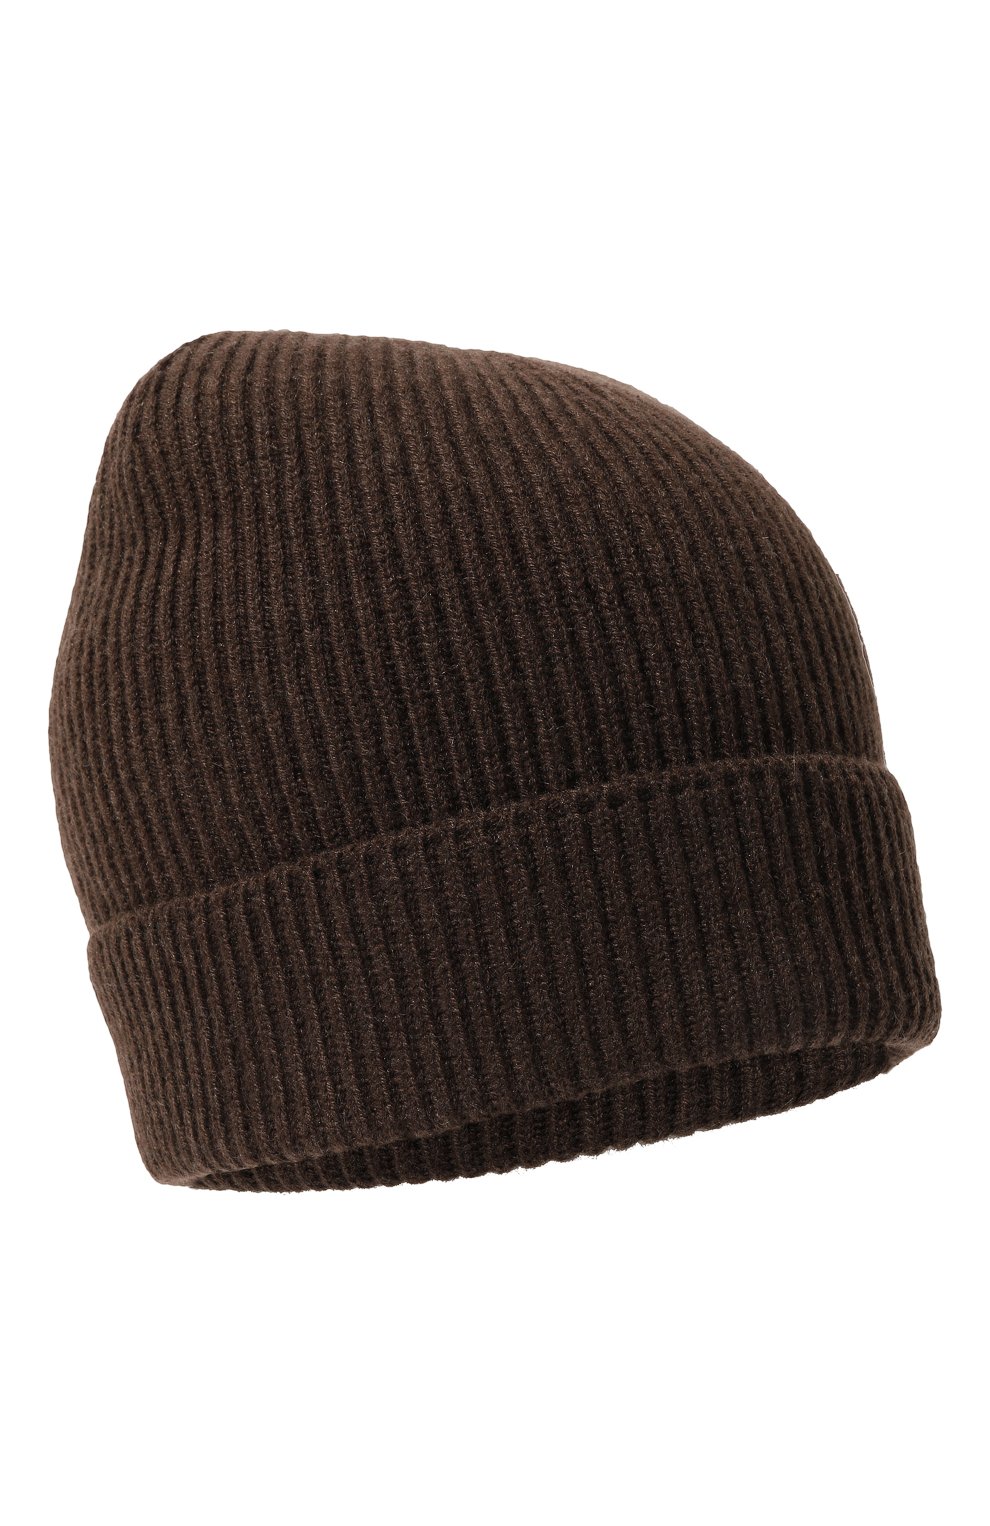 Мужская кашемировая шапка TOM FORD коричневого цвета, арт. BAK88/TFK800M08 | Фото 1 (Материал: Текстиль, Кашемир, Шерсть; Кросс-КТ: Трикотаж)